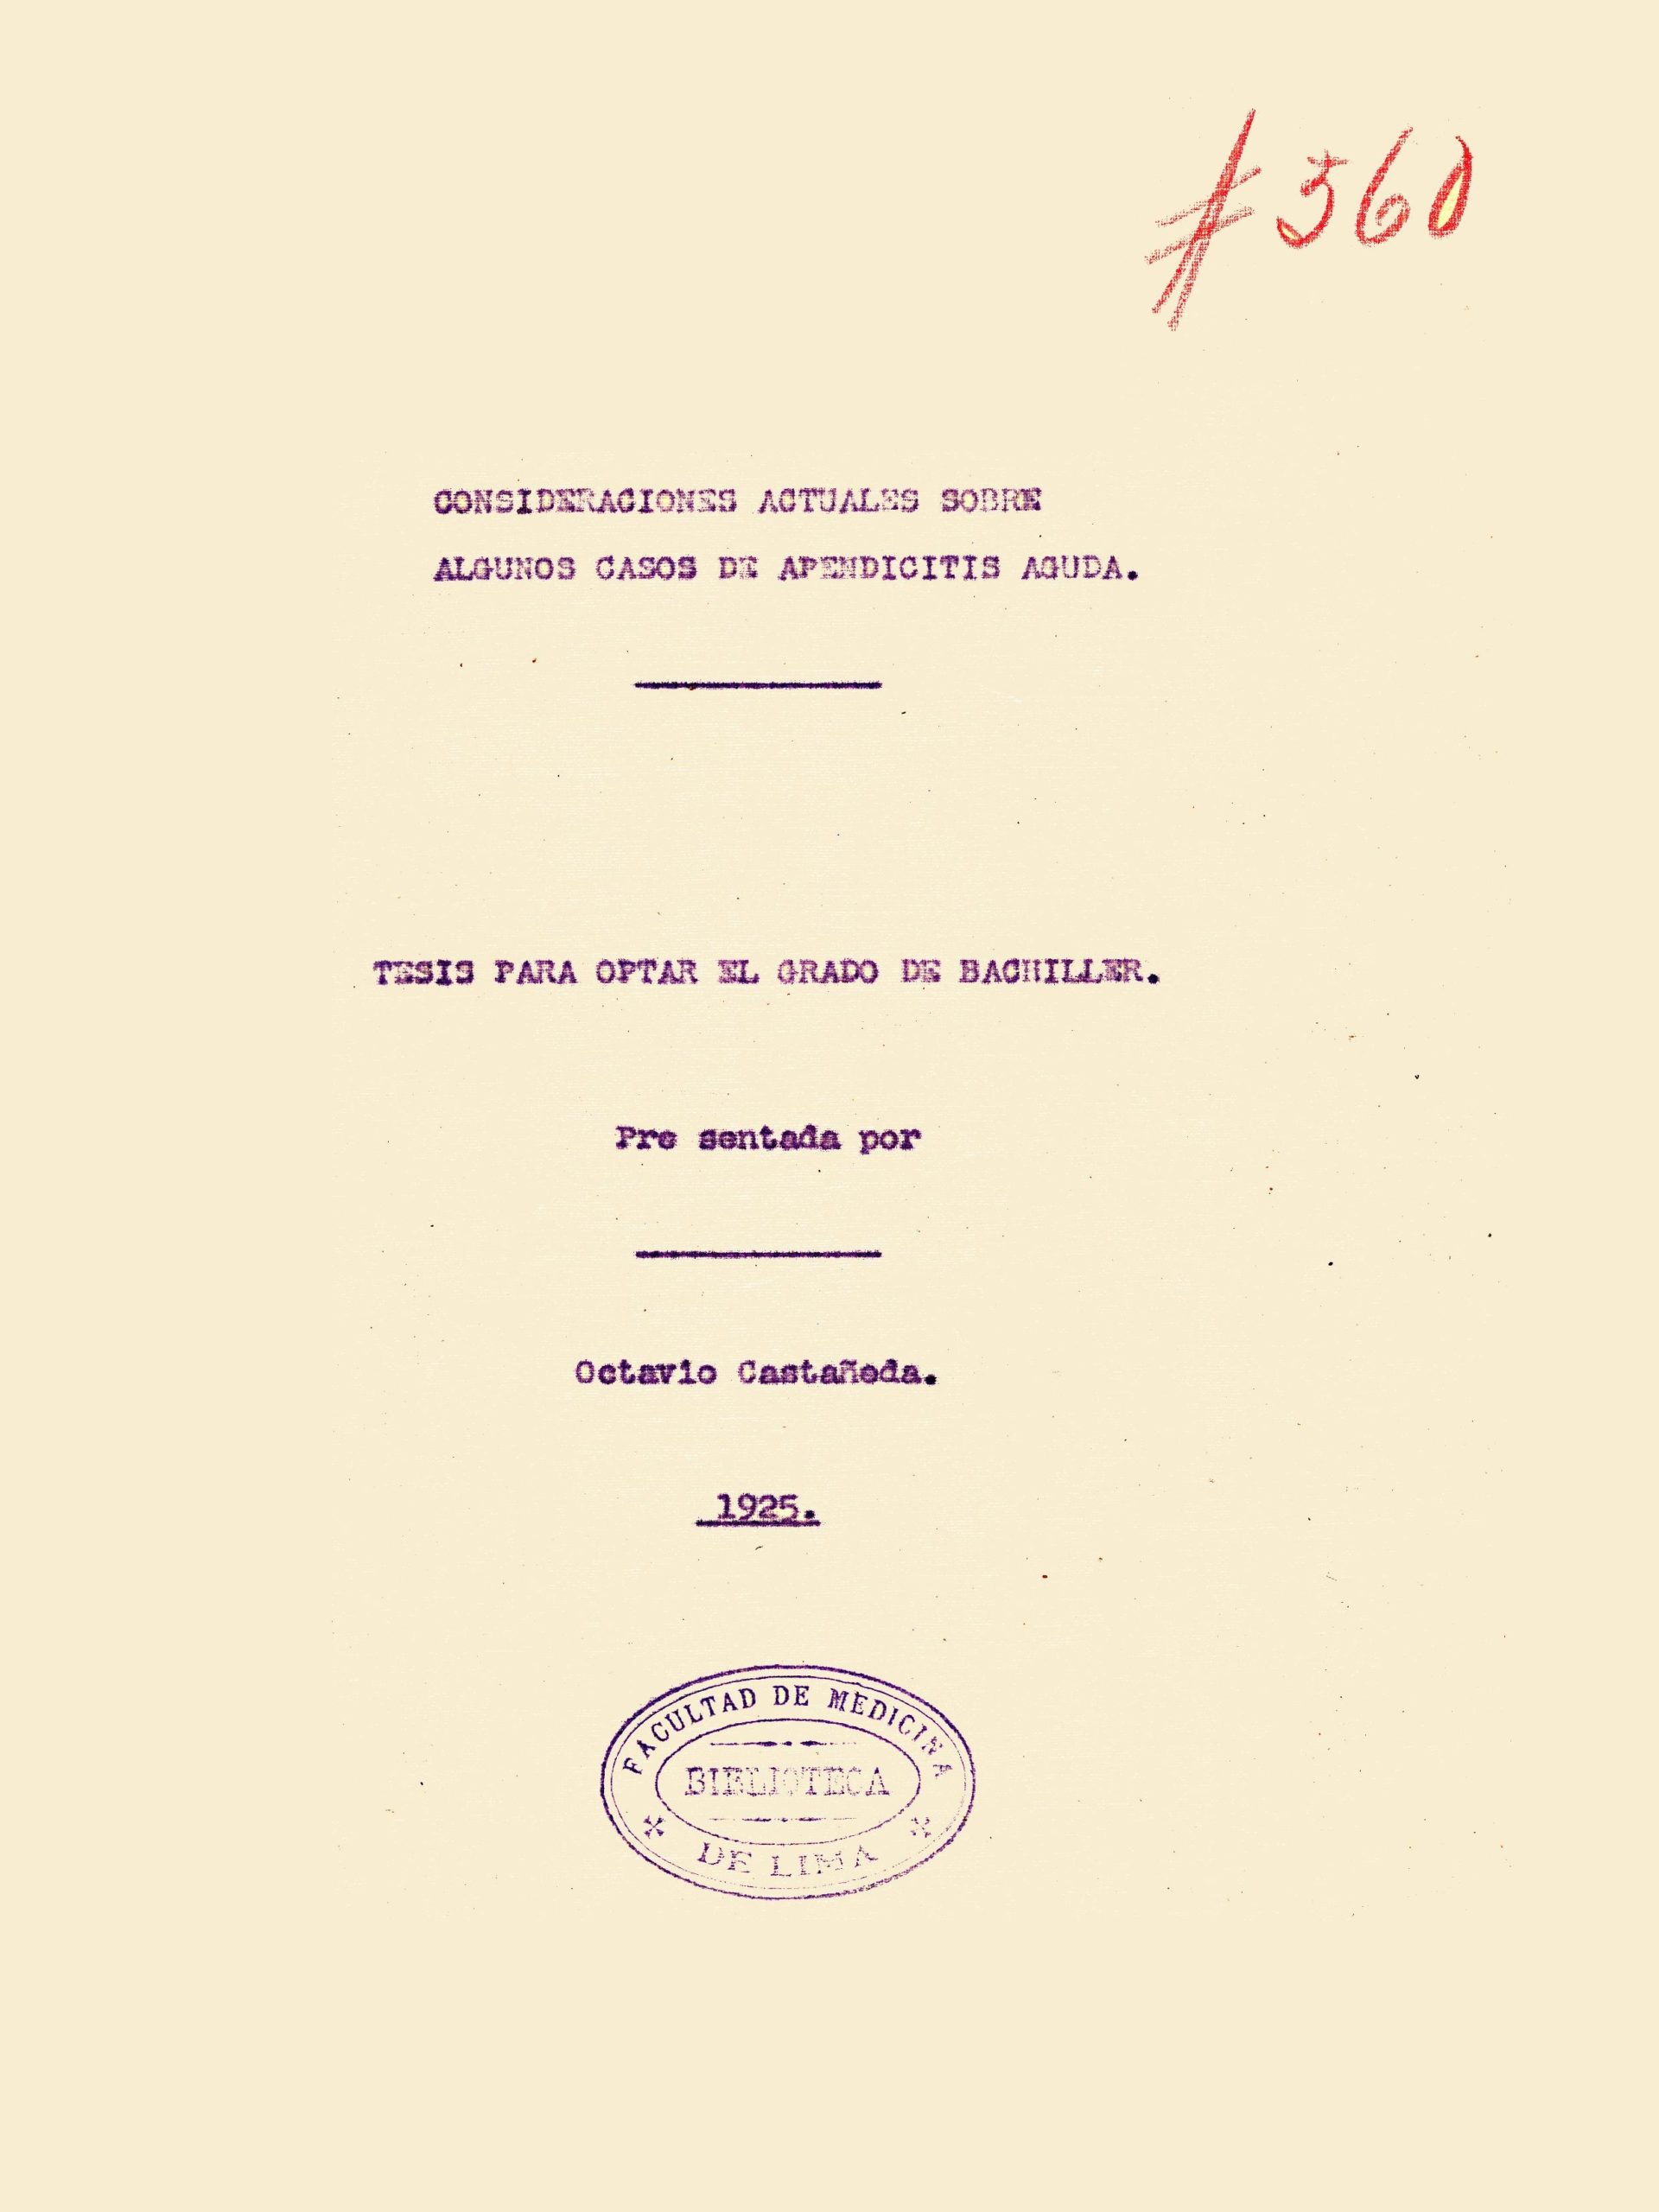 Consideraciones actuales sobre algunos casos de apendicitis_Octavio Castañeda_1925